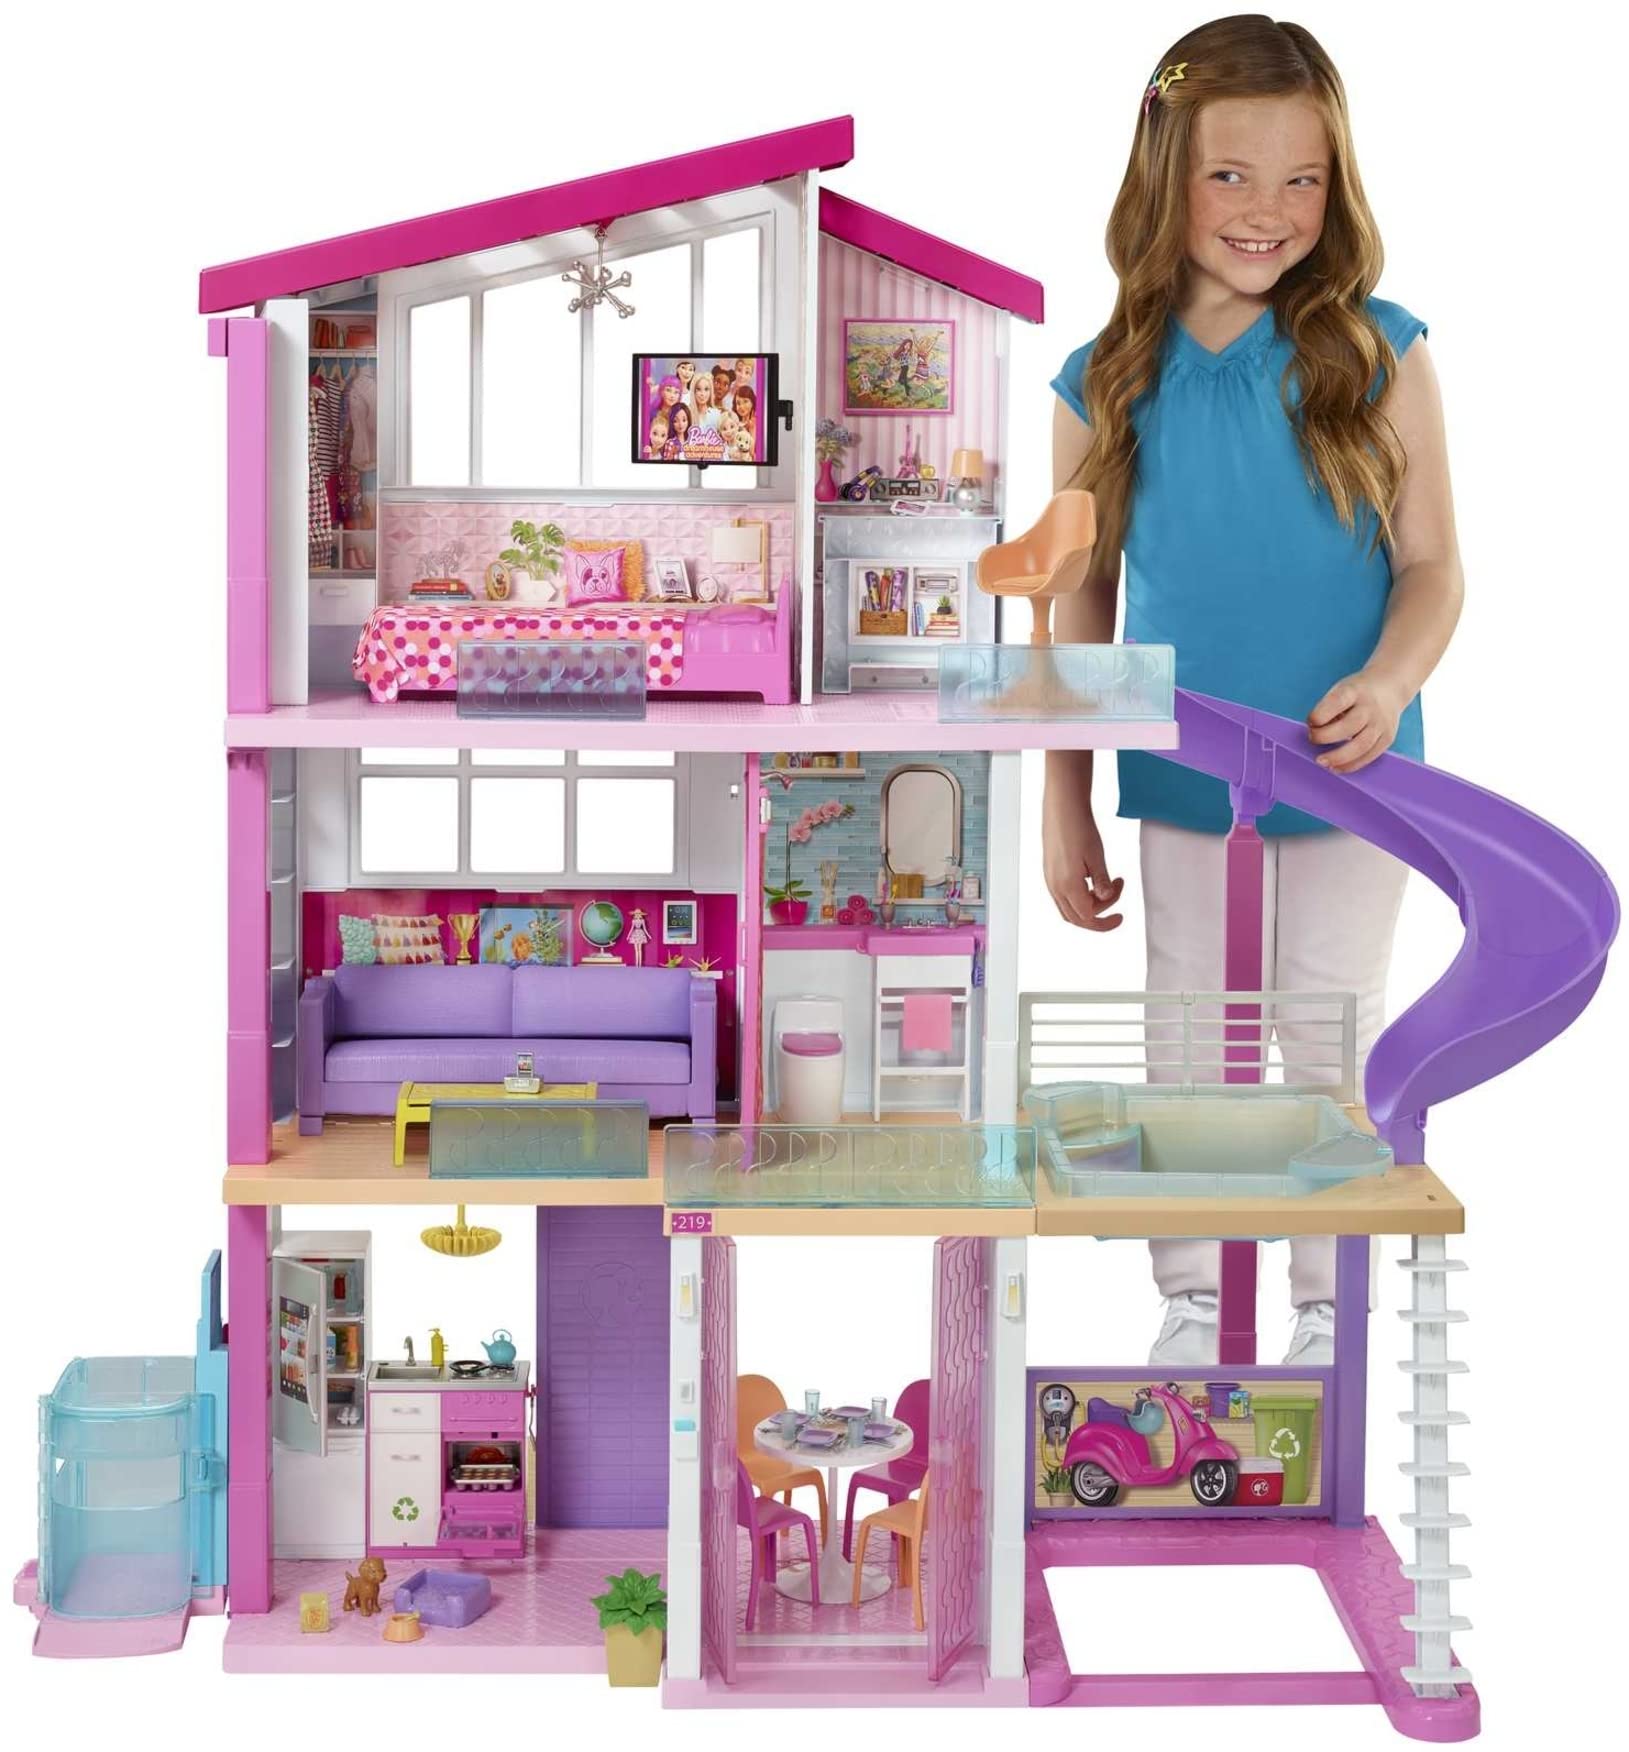 Canal da Lulu: Casa dos Sonhos da Barbie comparação de preços no Brasil e  Exterior